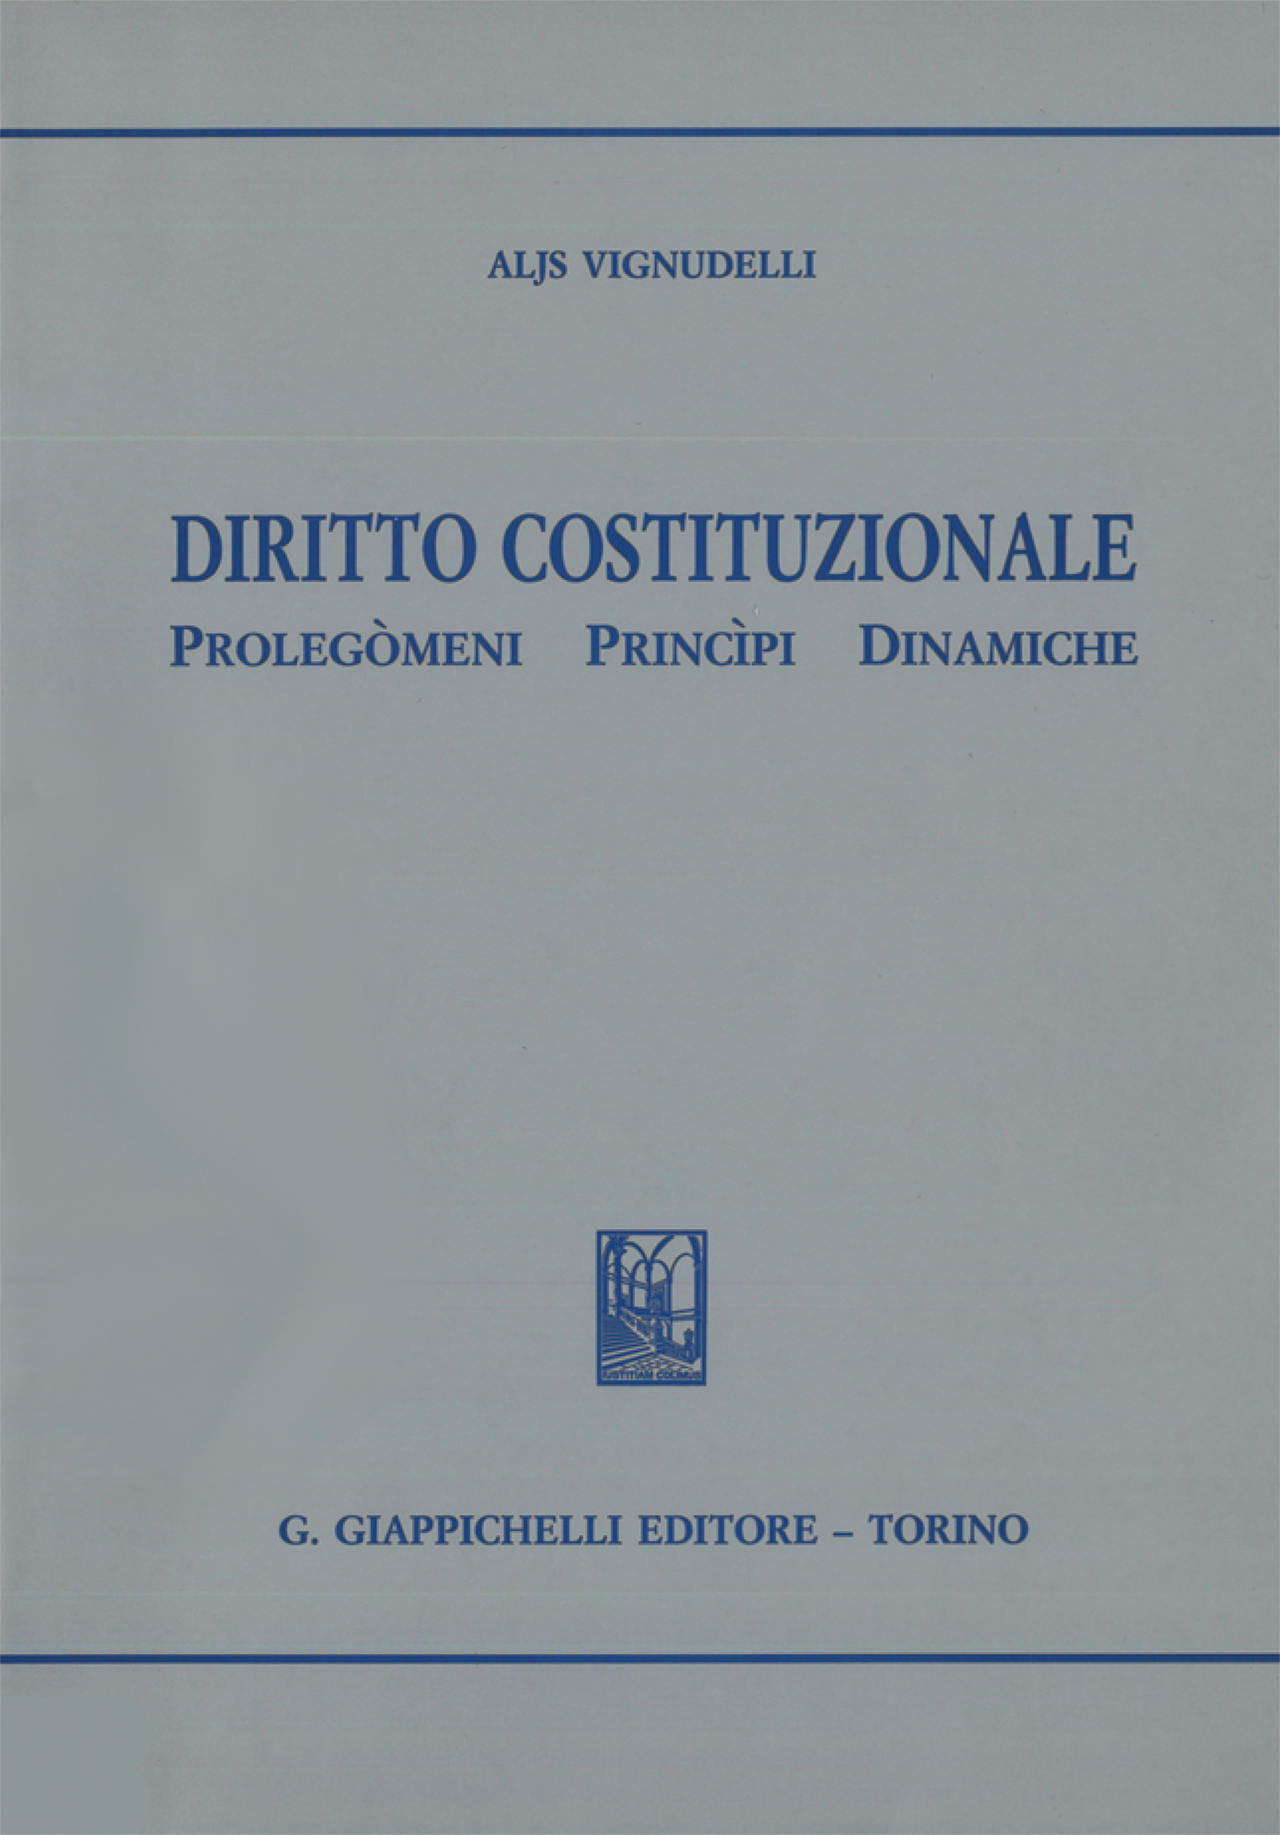 Aljs Vignudelli - Diritto costituzionale Seconda edizione